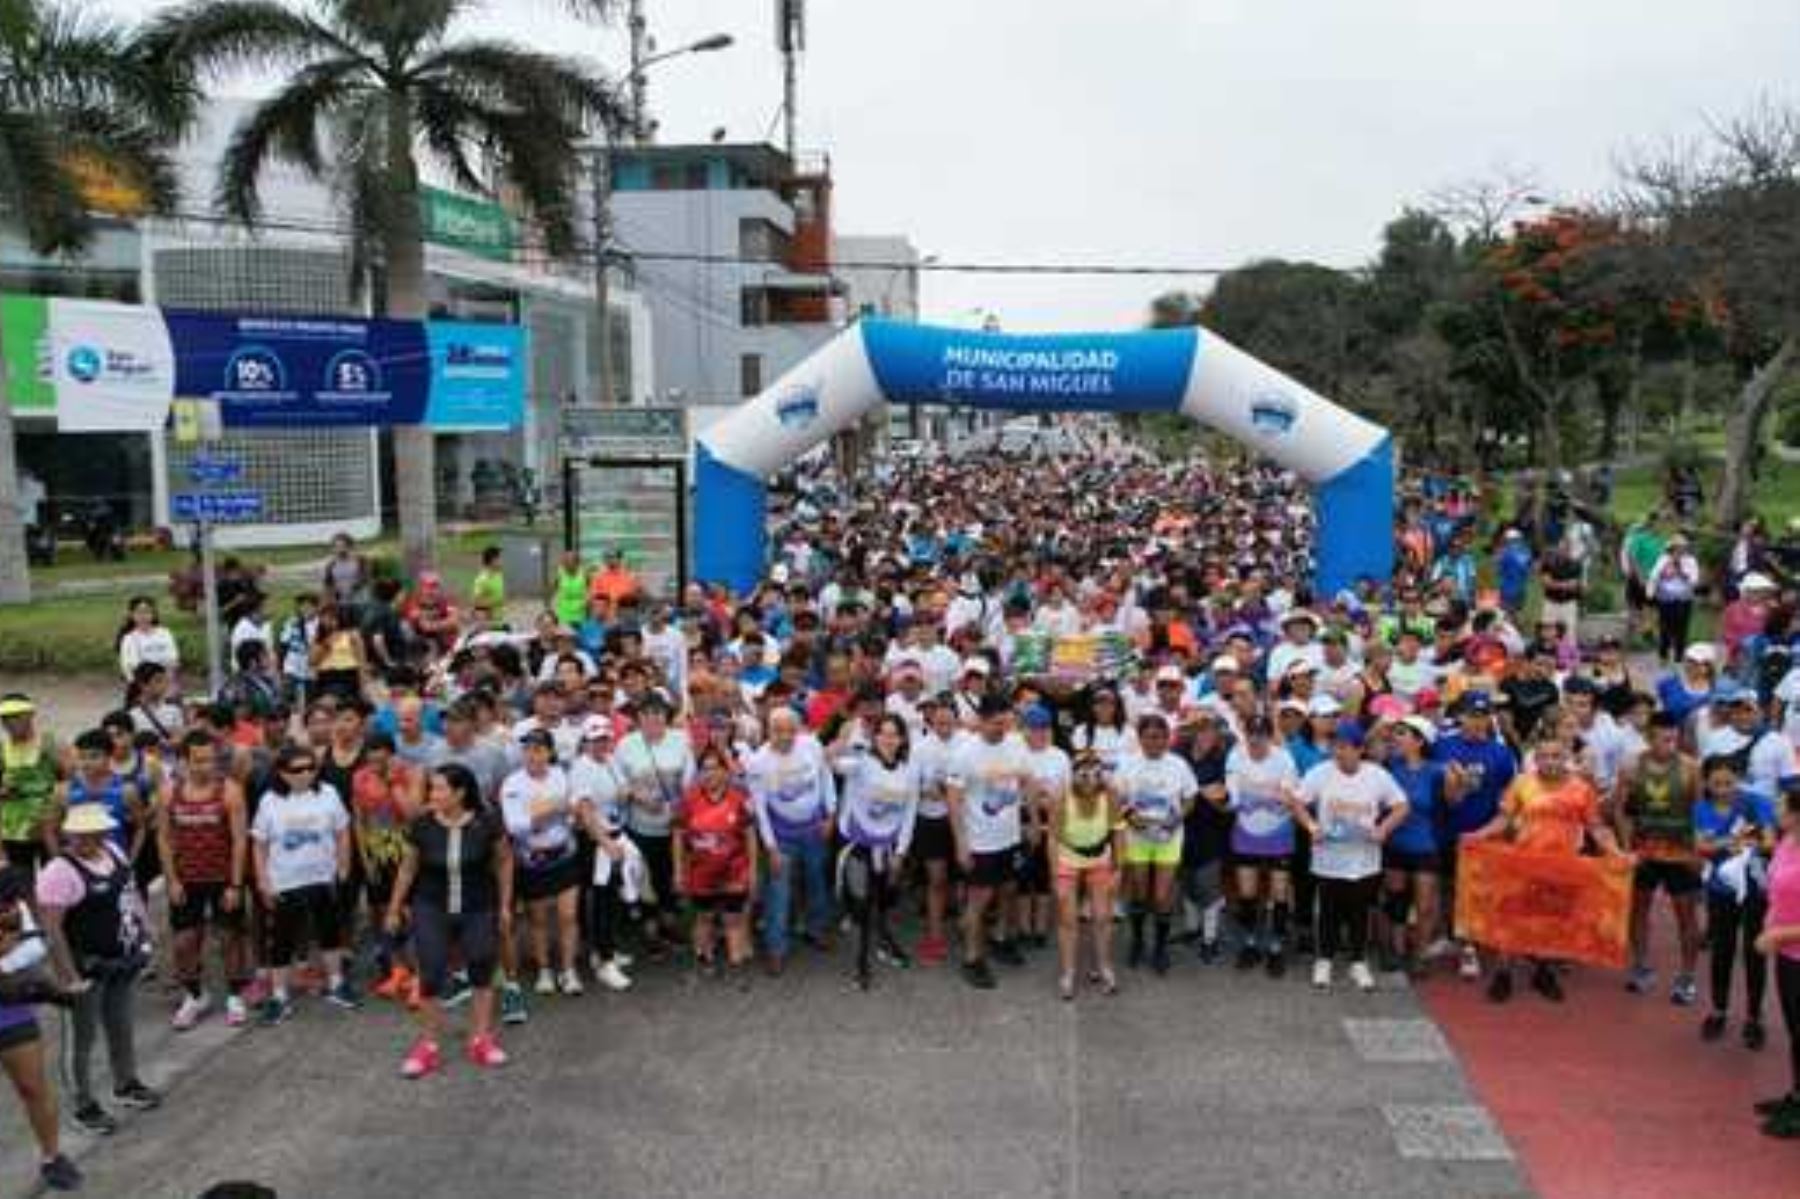 Bajo el lema “Gánale al cáncer, unamos lazos”, un total de 2780 personas participaron en la carrera “Desafío 5k”. Foto: Minsa